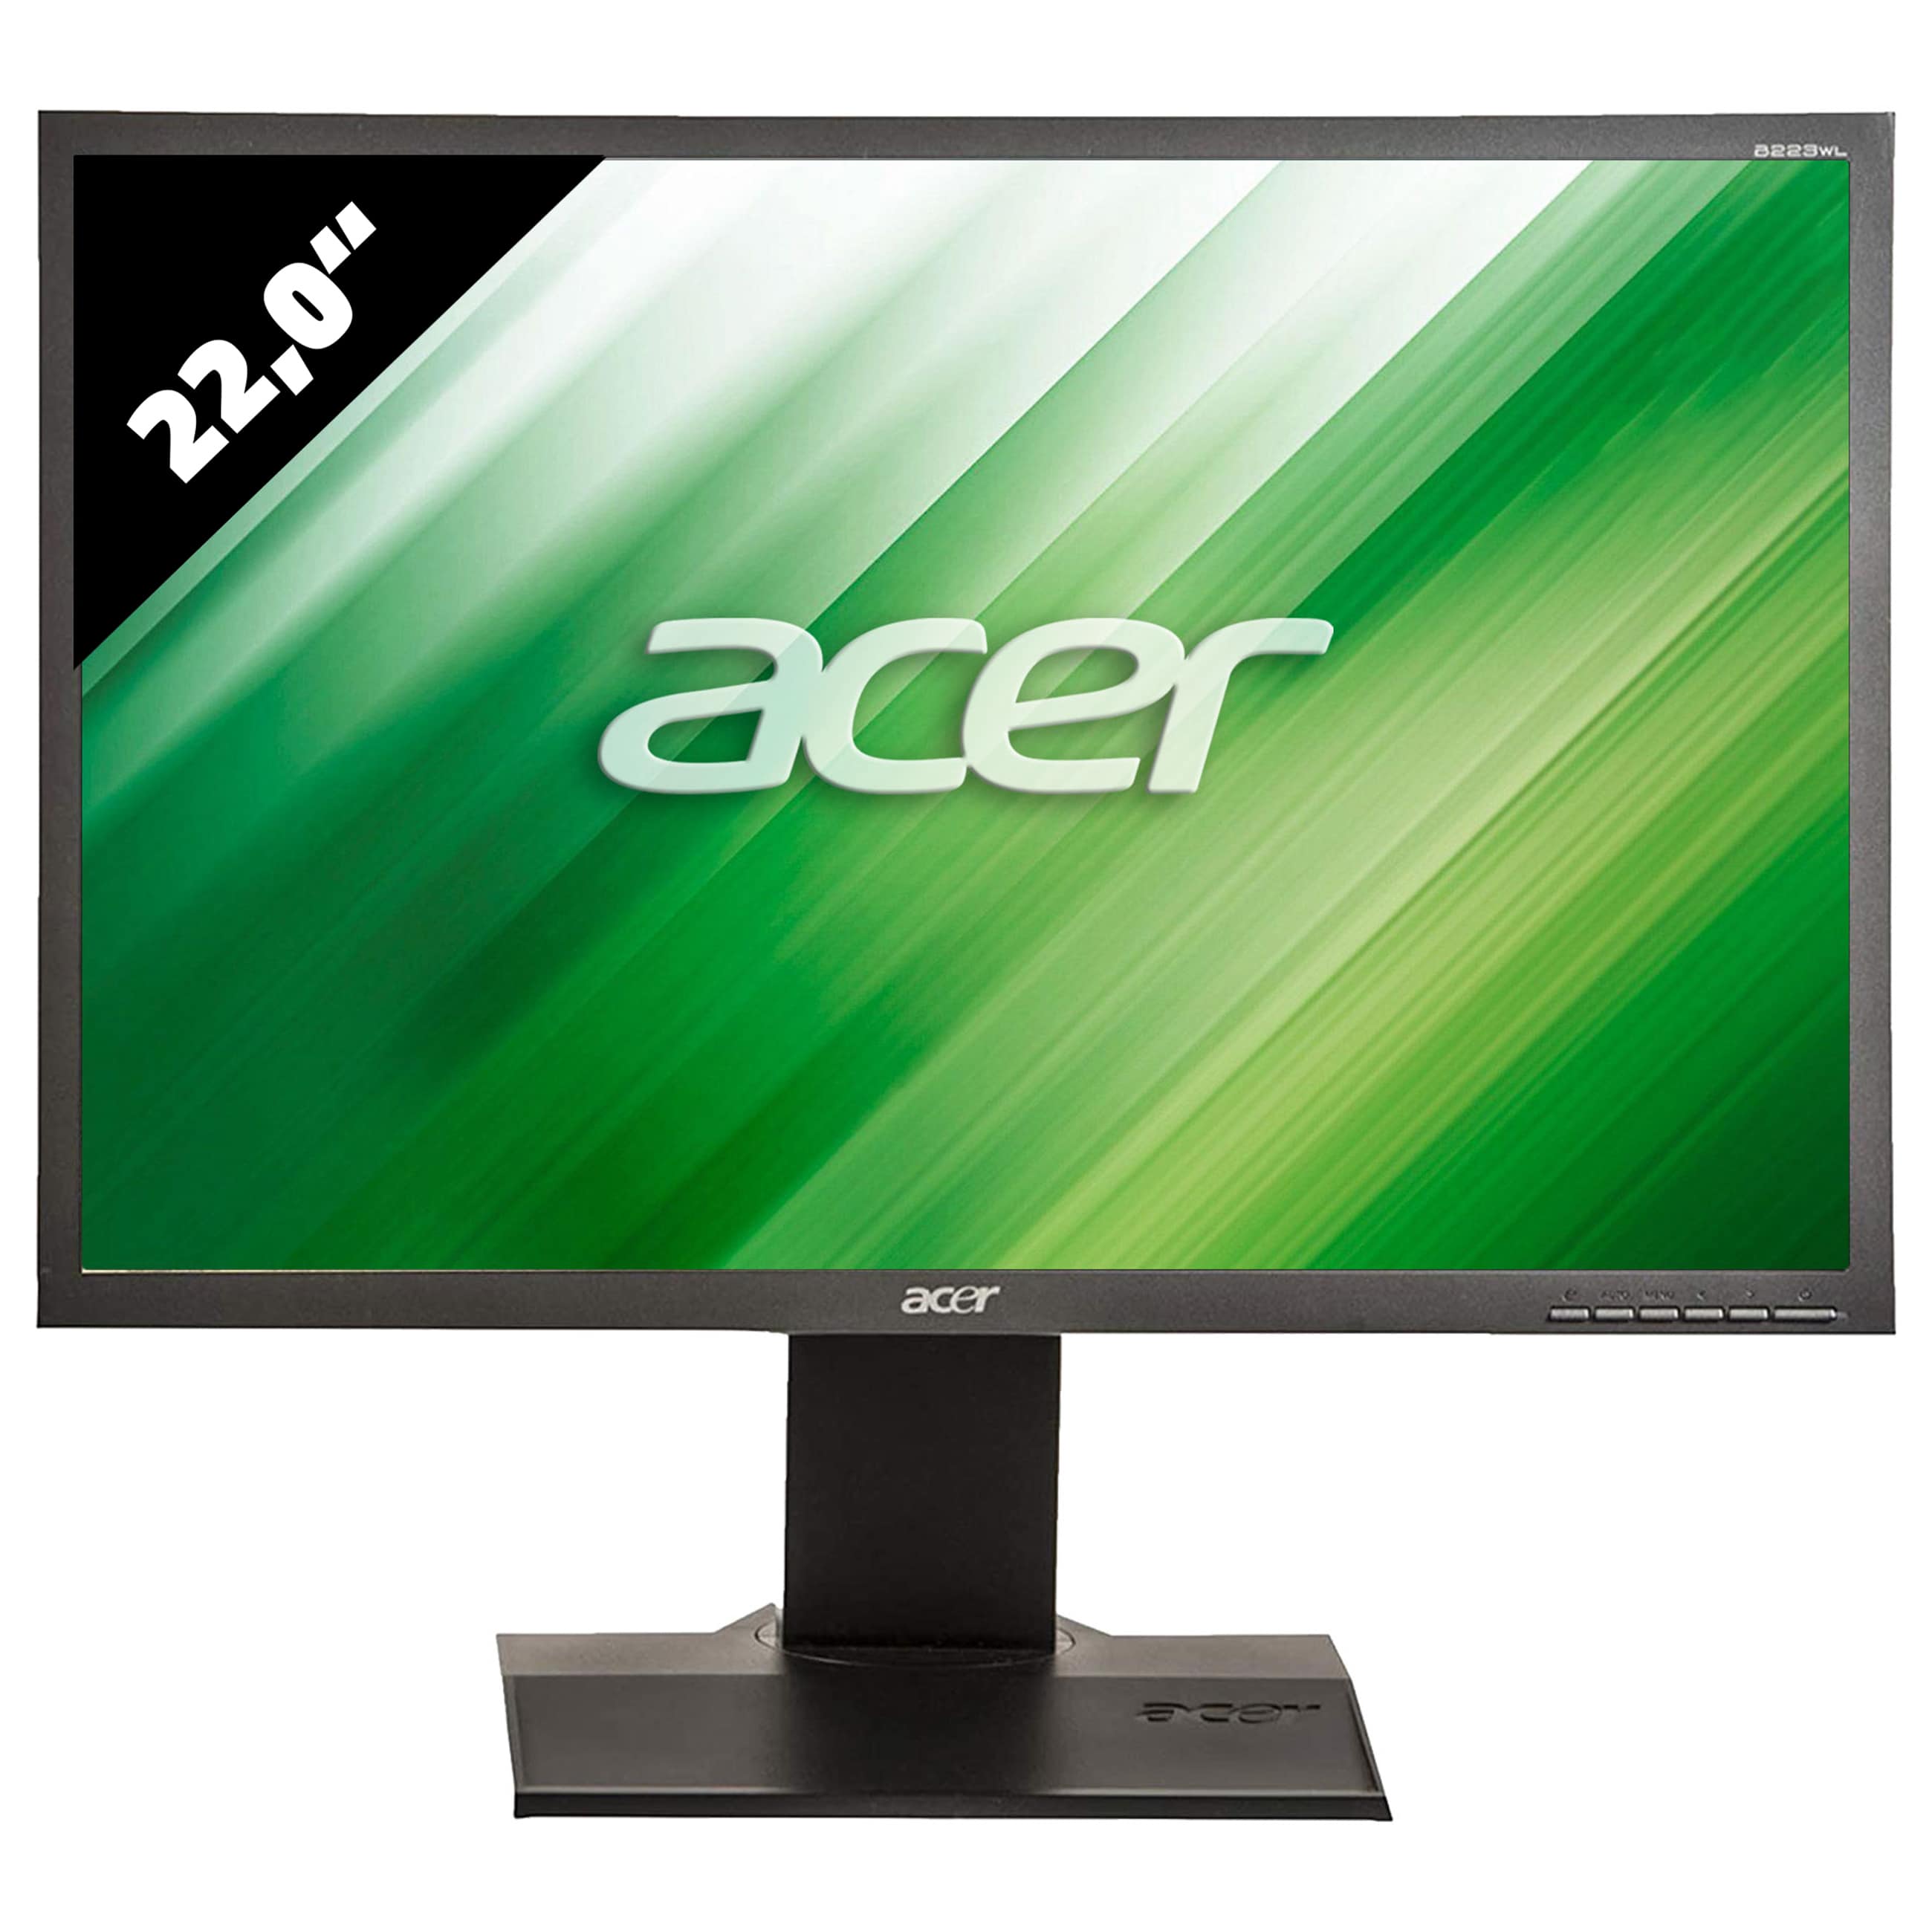 Acer B223WL - 1680 x 1050 - WSXGA+